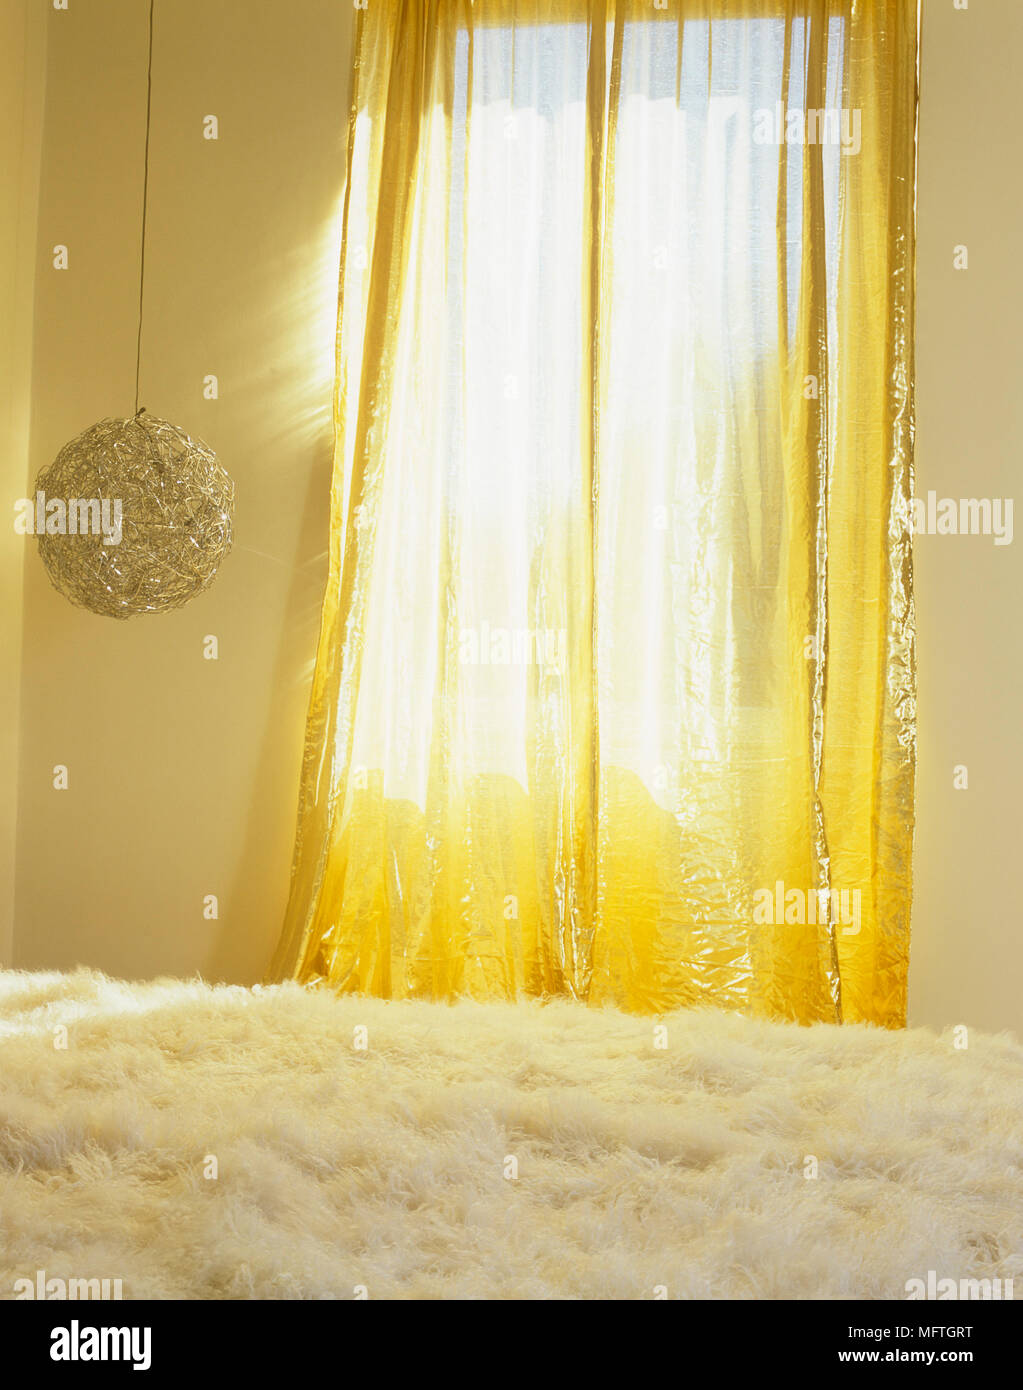 Rideaux d'or à la lumière de la fenêtre et plafond suspendu au dessus de lit Banque D'Images